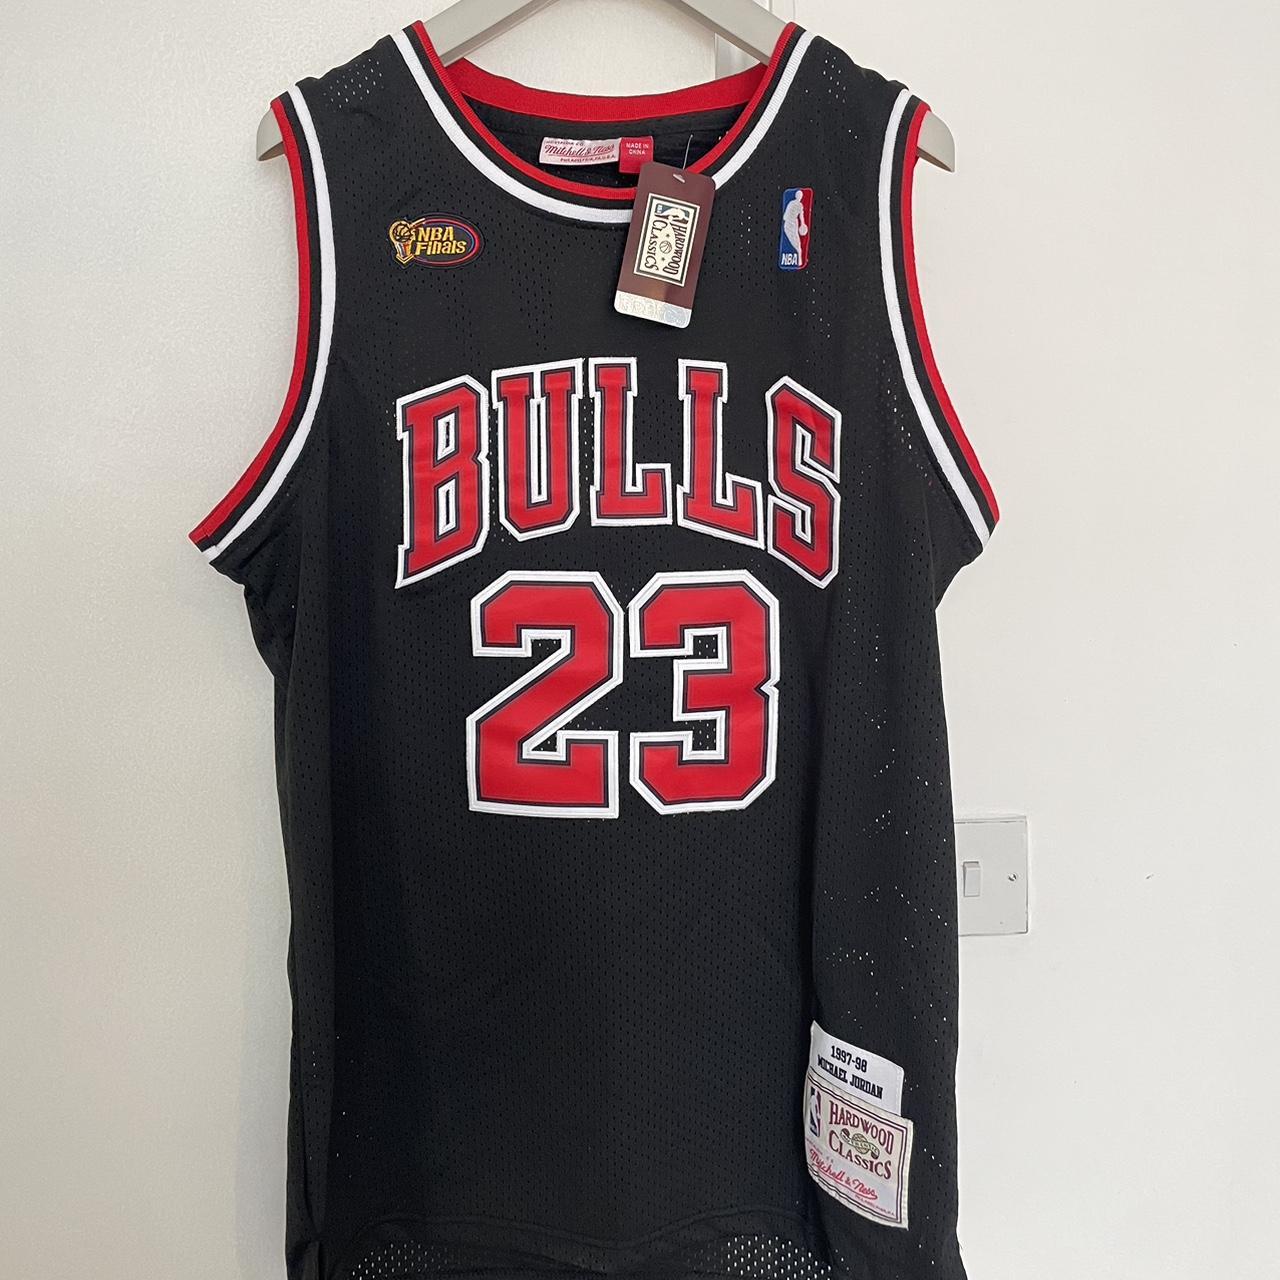 📍Chicago Bulls NBA Finals 1997/98 Michael Jordan... - Depop